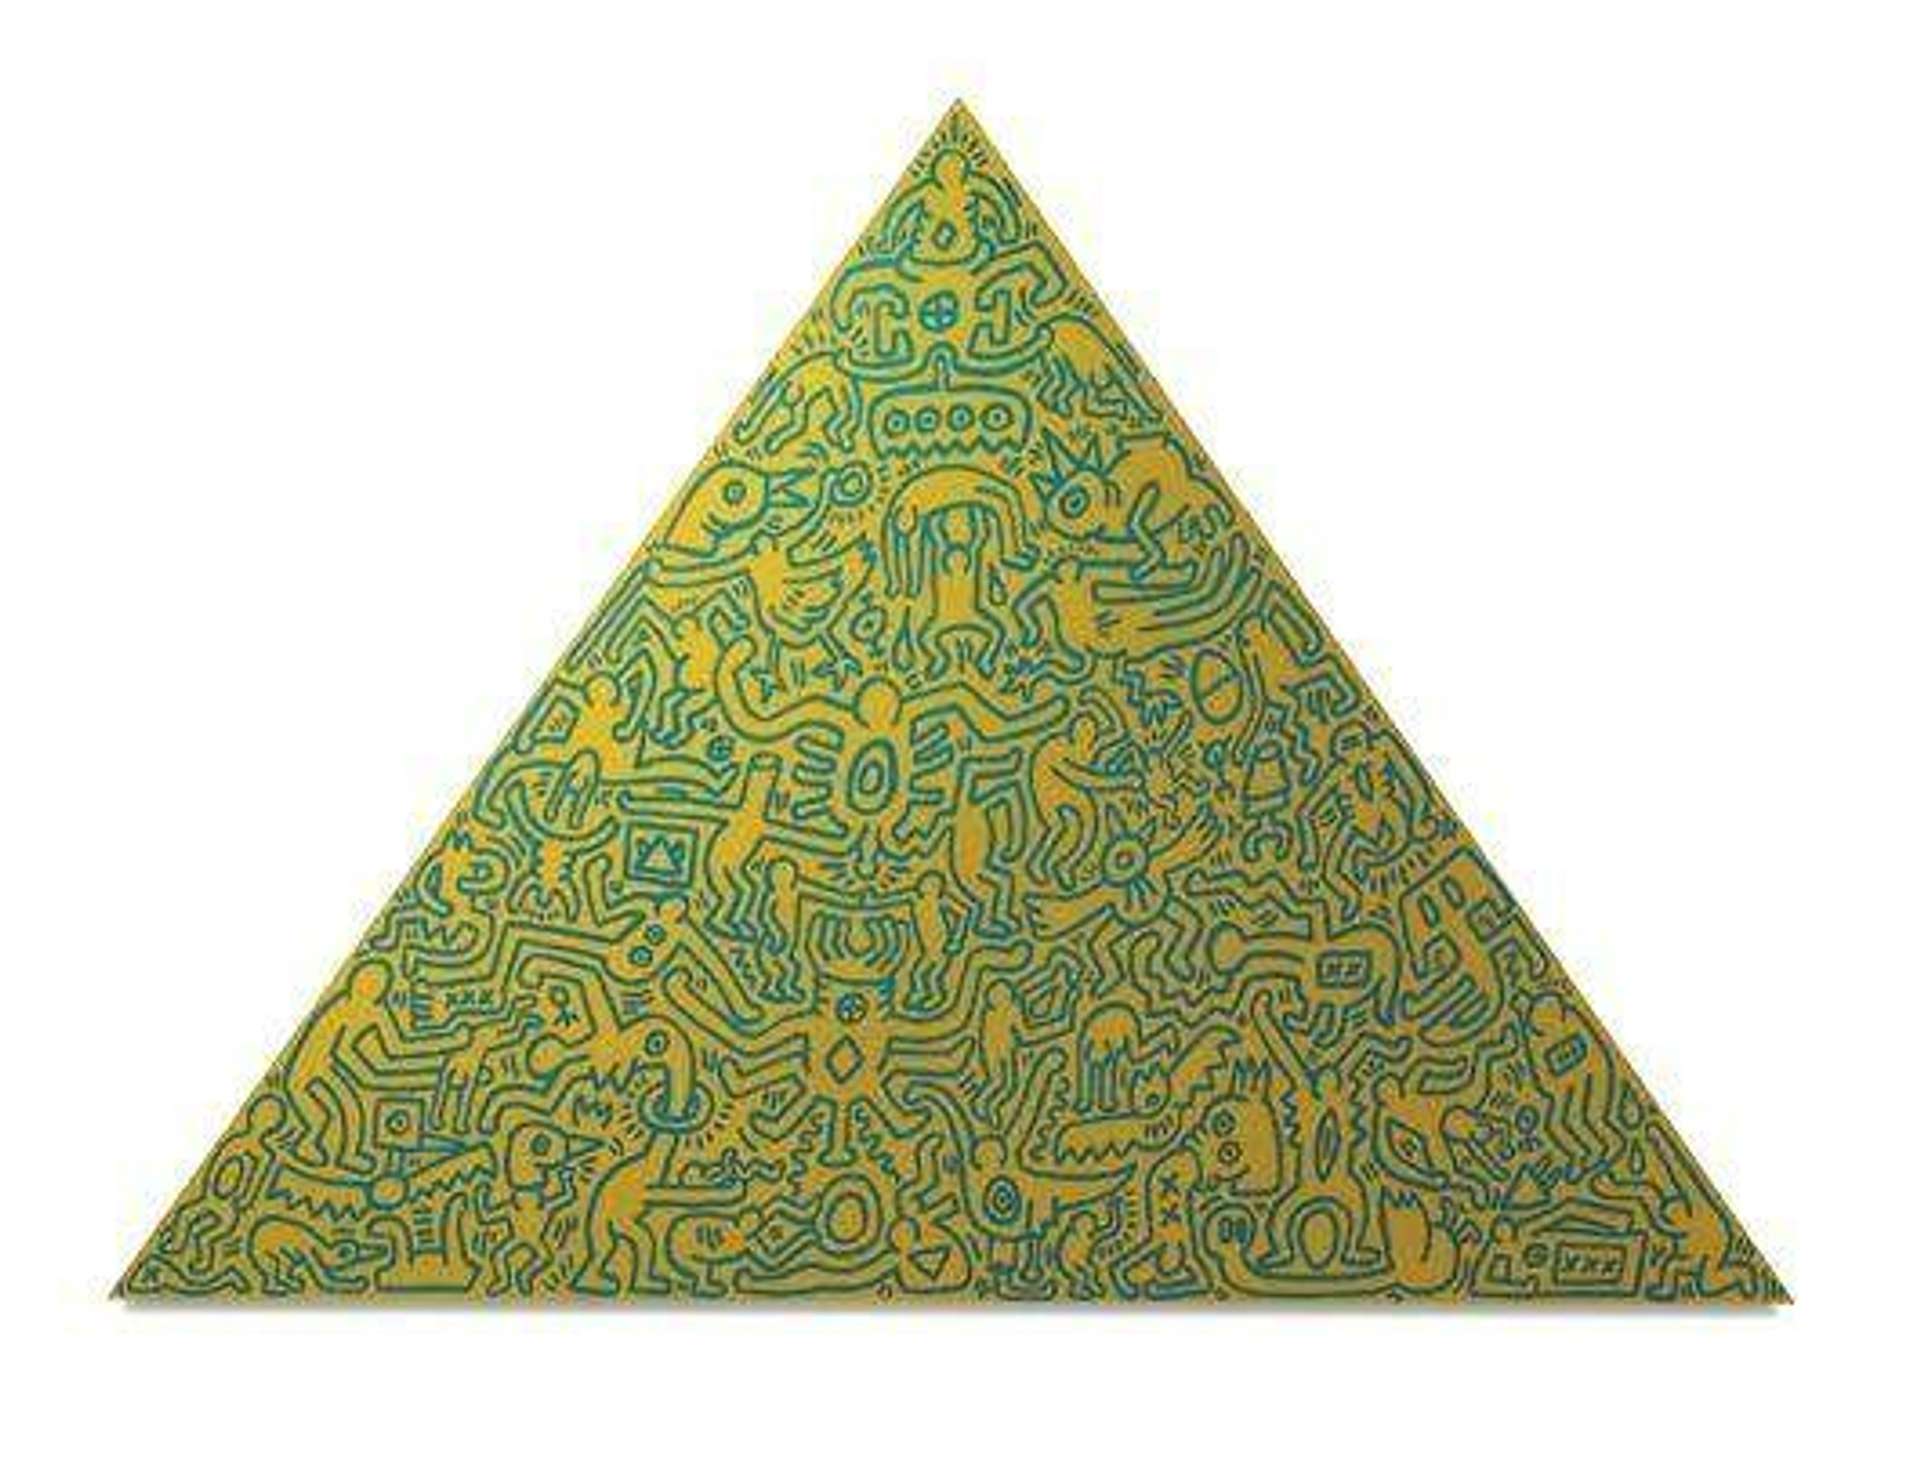 Pyramid (gold I) by Keith Haring